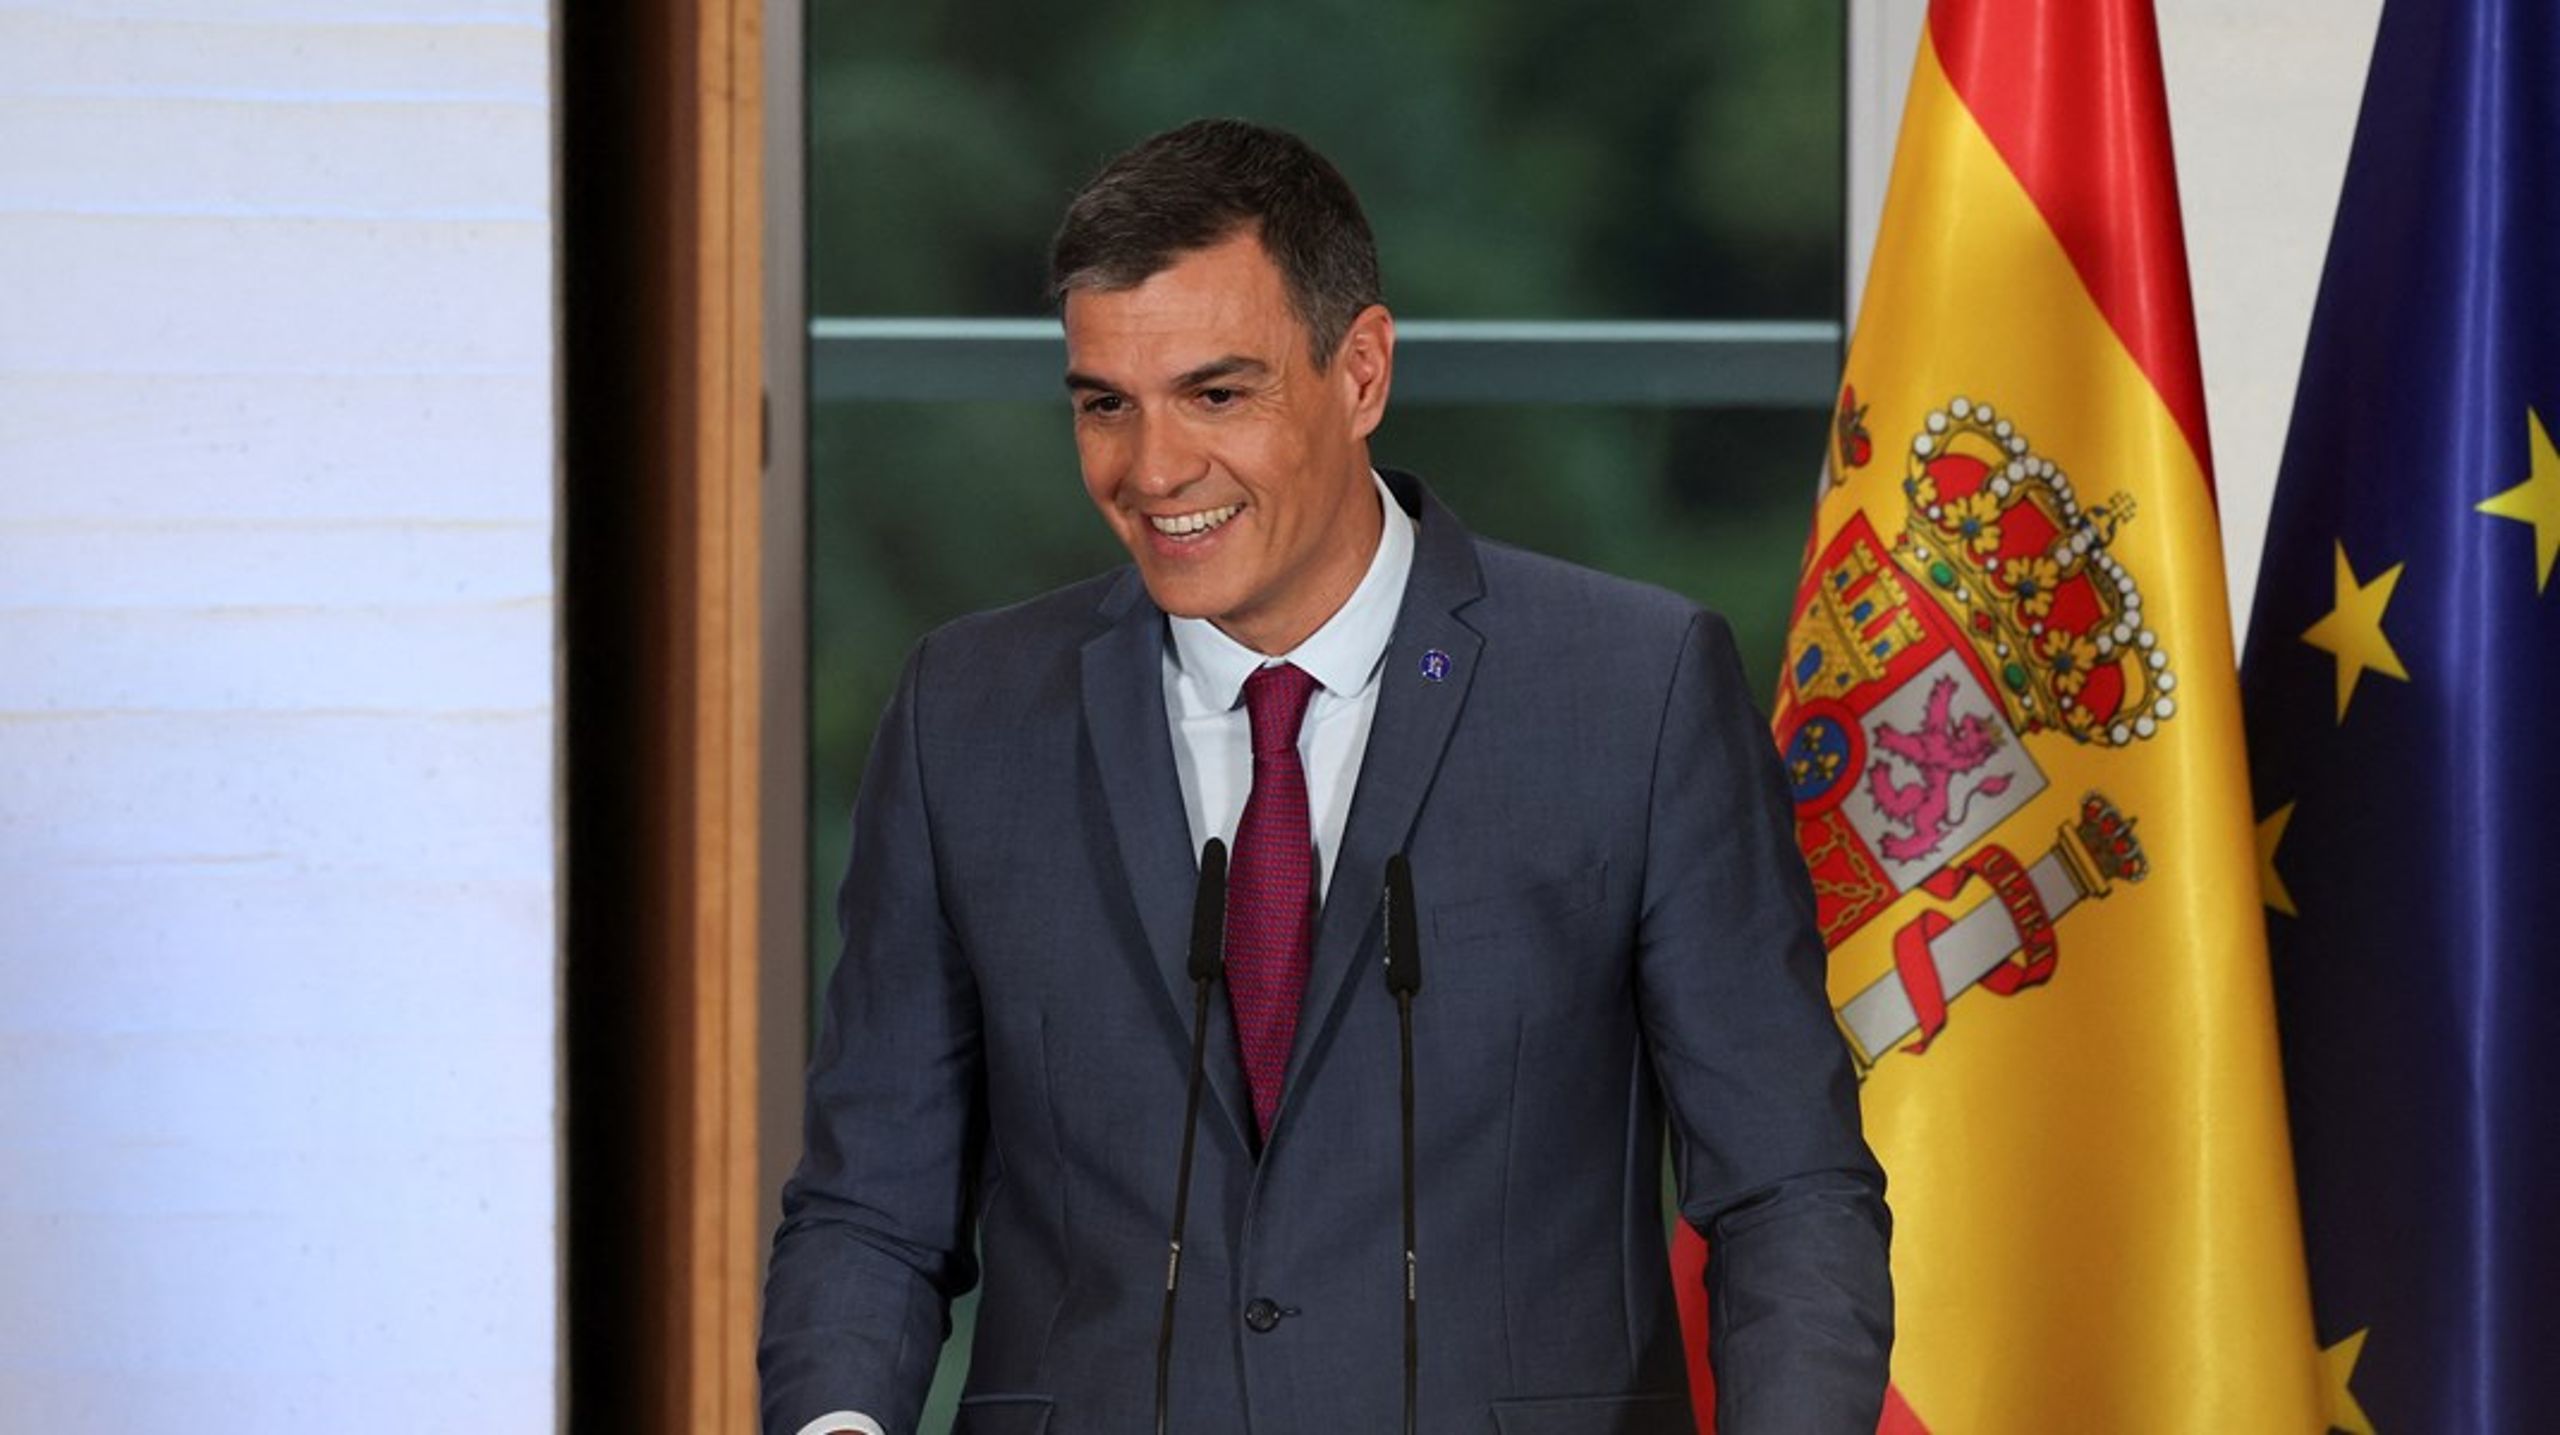 Den spanske statsministeren&nbsp;Pedro Sanchez skal ta imot 47 europeiske land i det&nbsp;Det europeiske politiske fellesskap (EPC), torsdag denne uken. Norges statsminister er en av de inviterte.&nbsp;